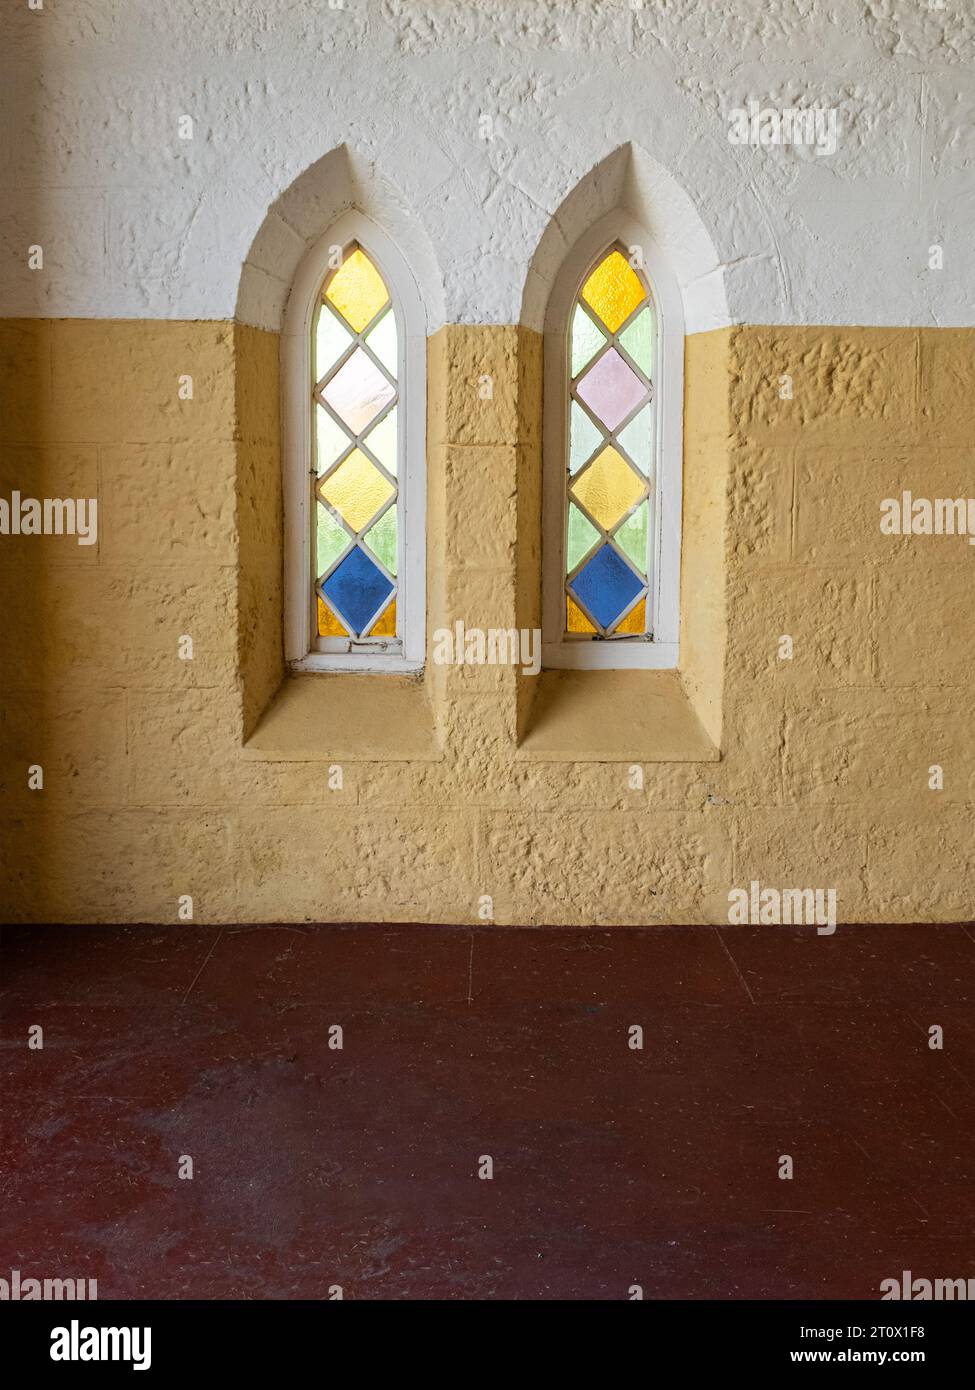 Due finestre della chiesa con vetrate colorate, stile lancetta ad arco, vista dall'interno Foto Stock